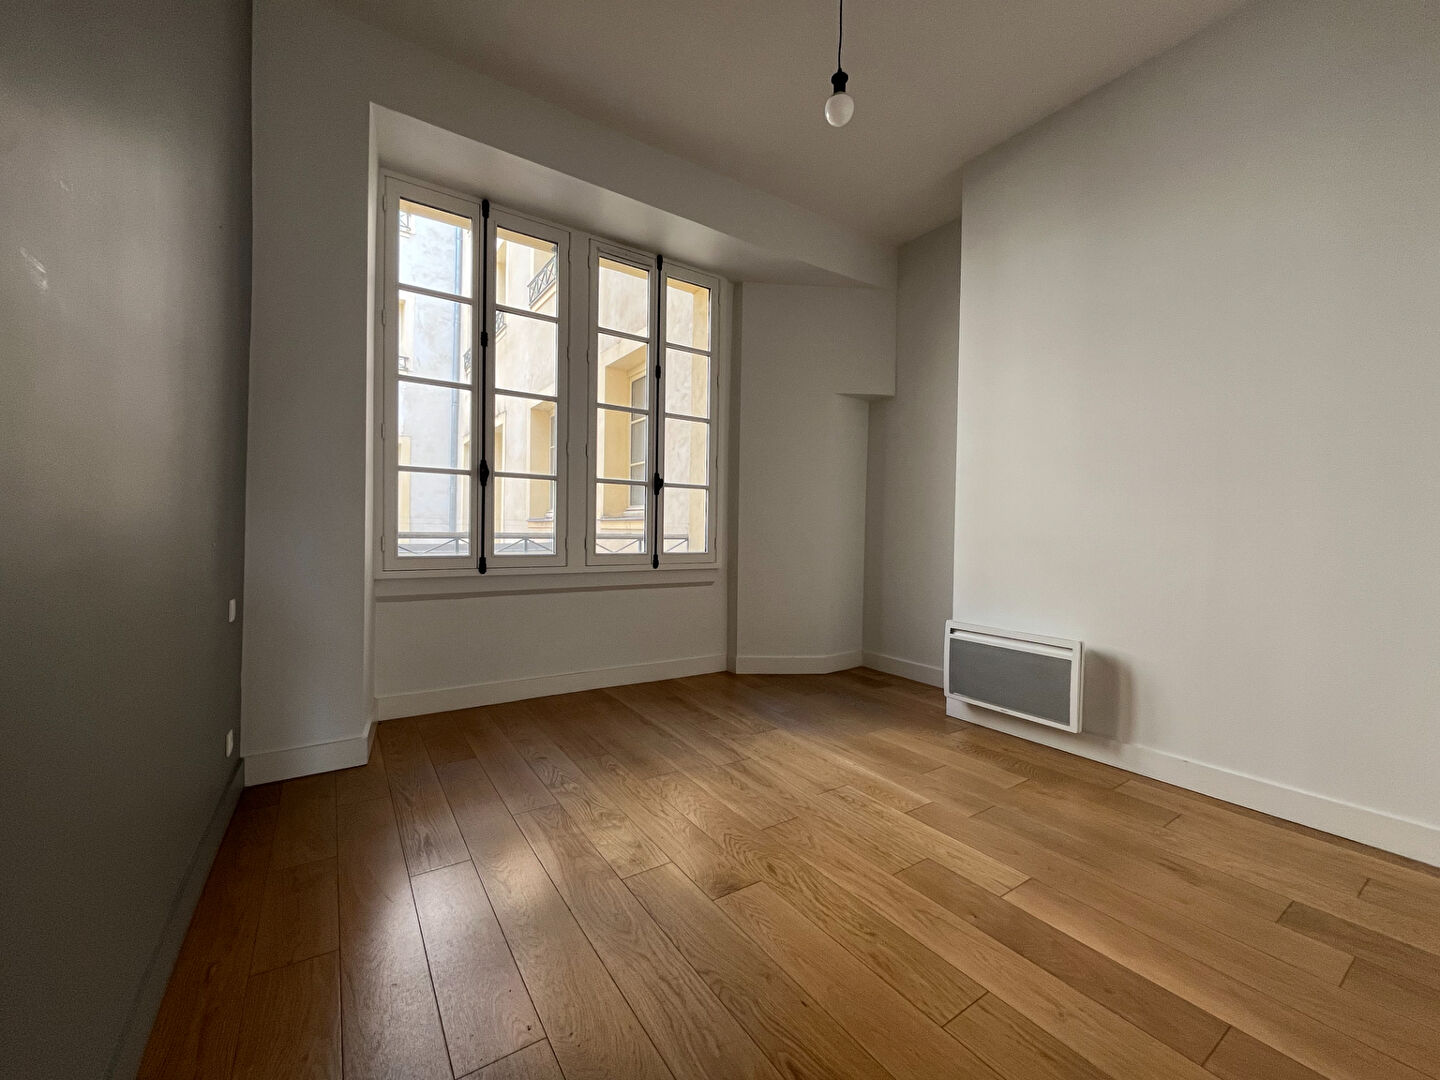 Appartement 5 pièces - 145 m² environ - 55082074f.jpg | Kermarrec Habitation